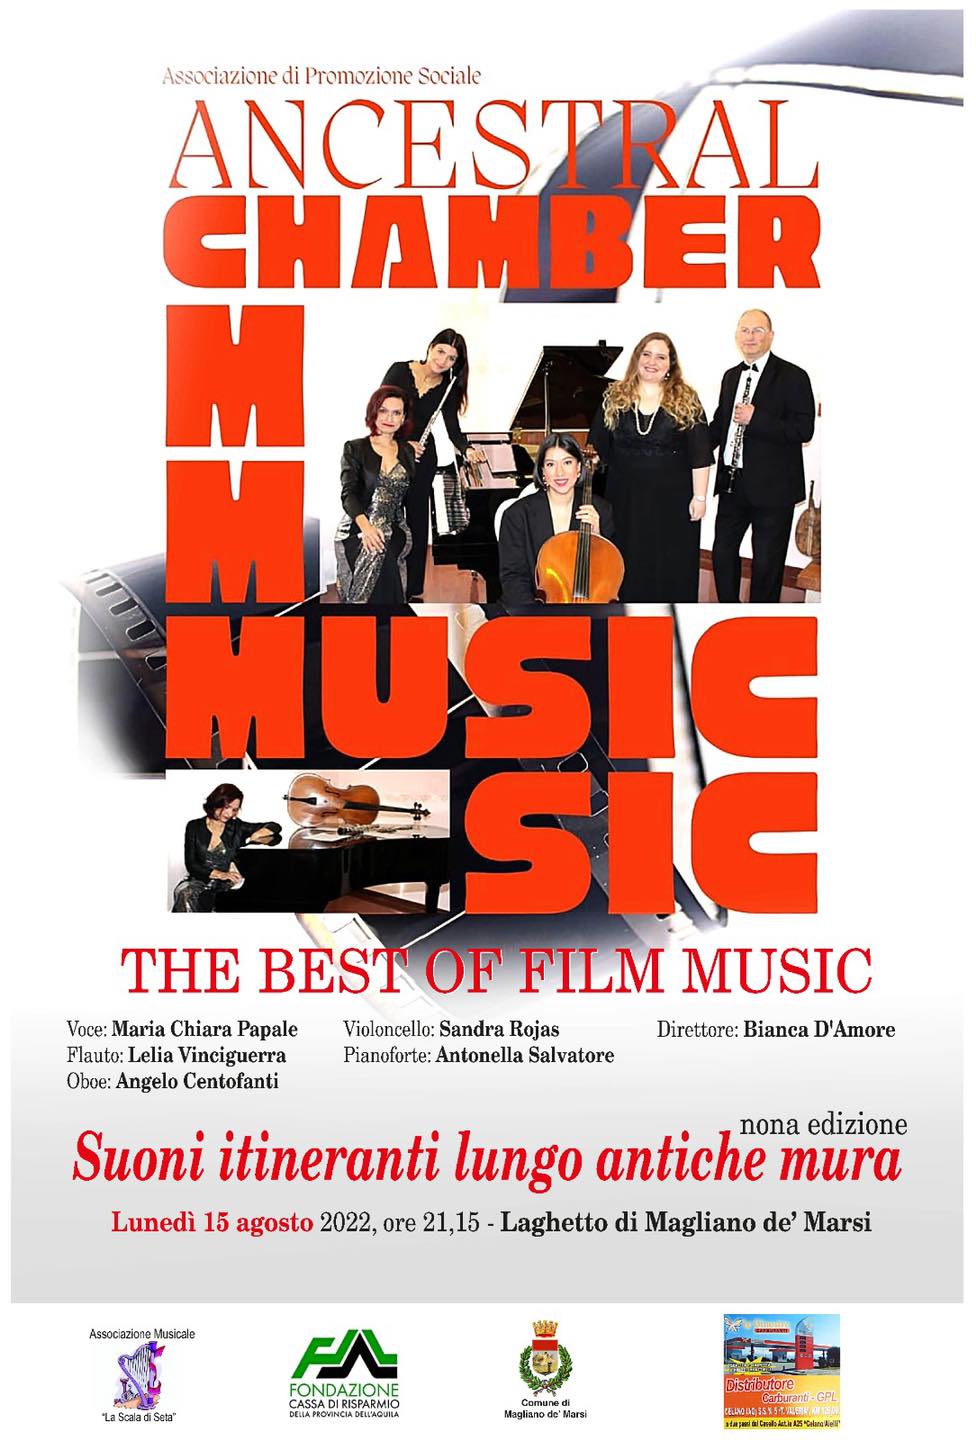 Concerto del gruppo ''Ancestral Chamber Music'' - The best of film musica a Magliano dei Marsi